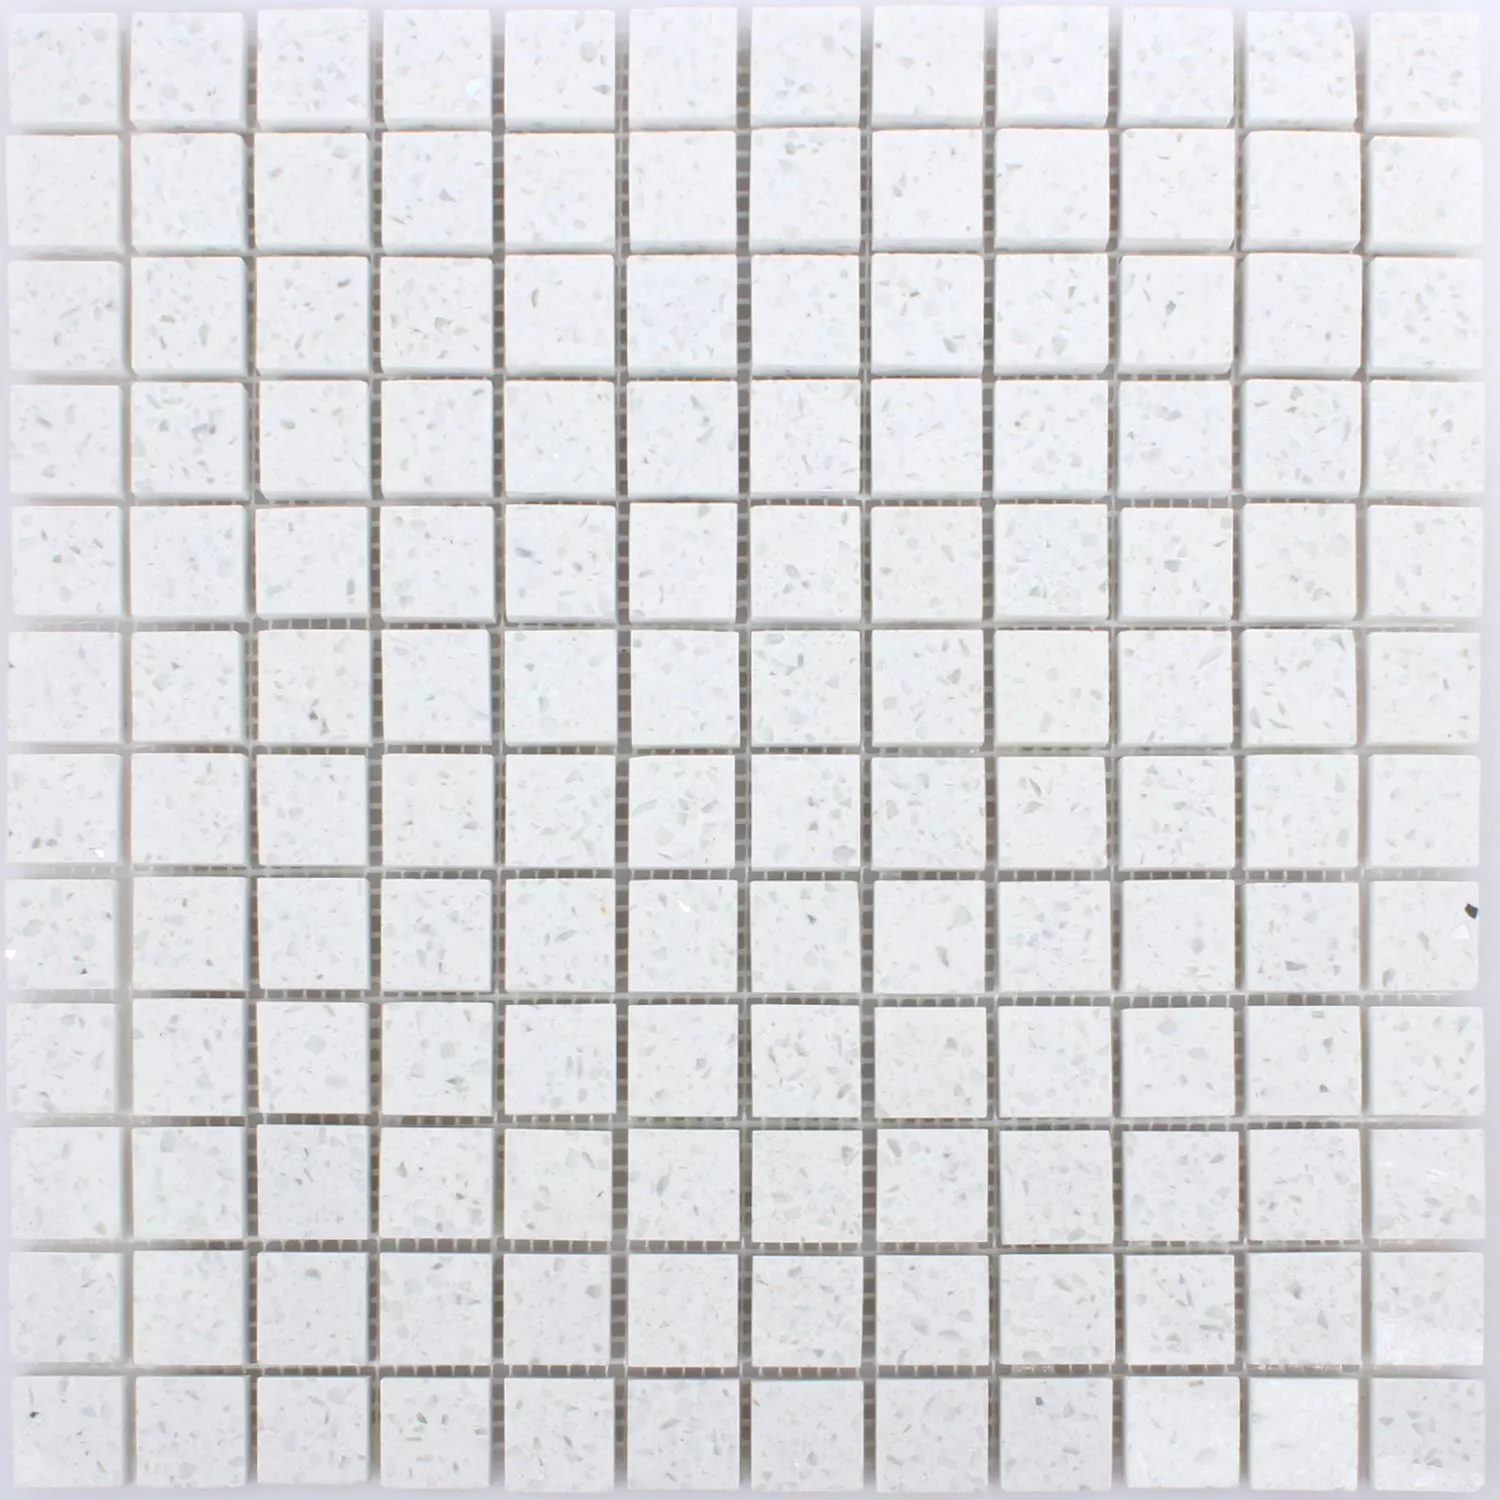 Sample Mosaic Tiles Quartz Resin White 